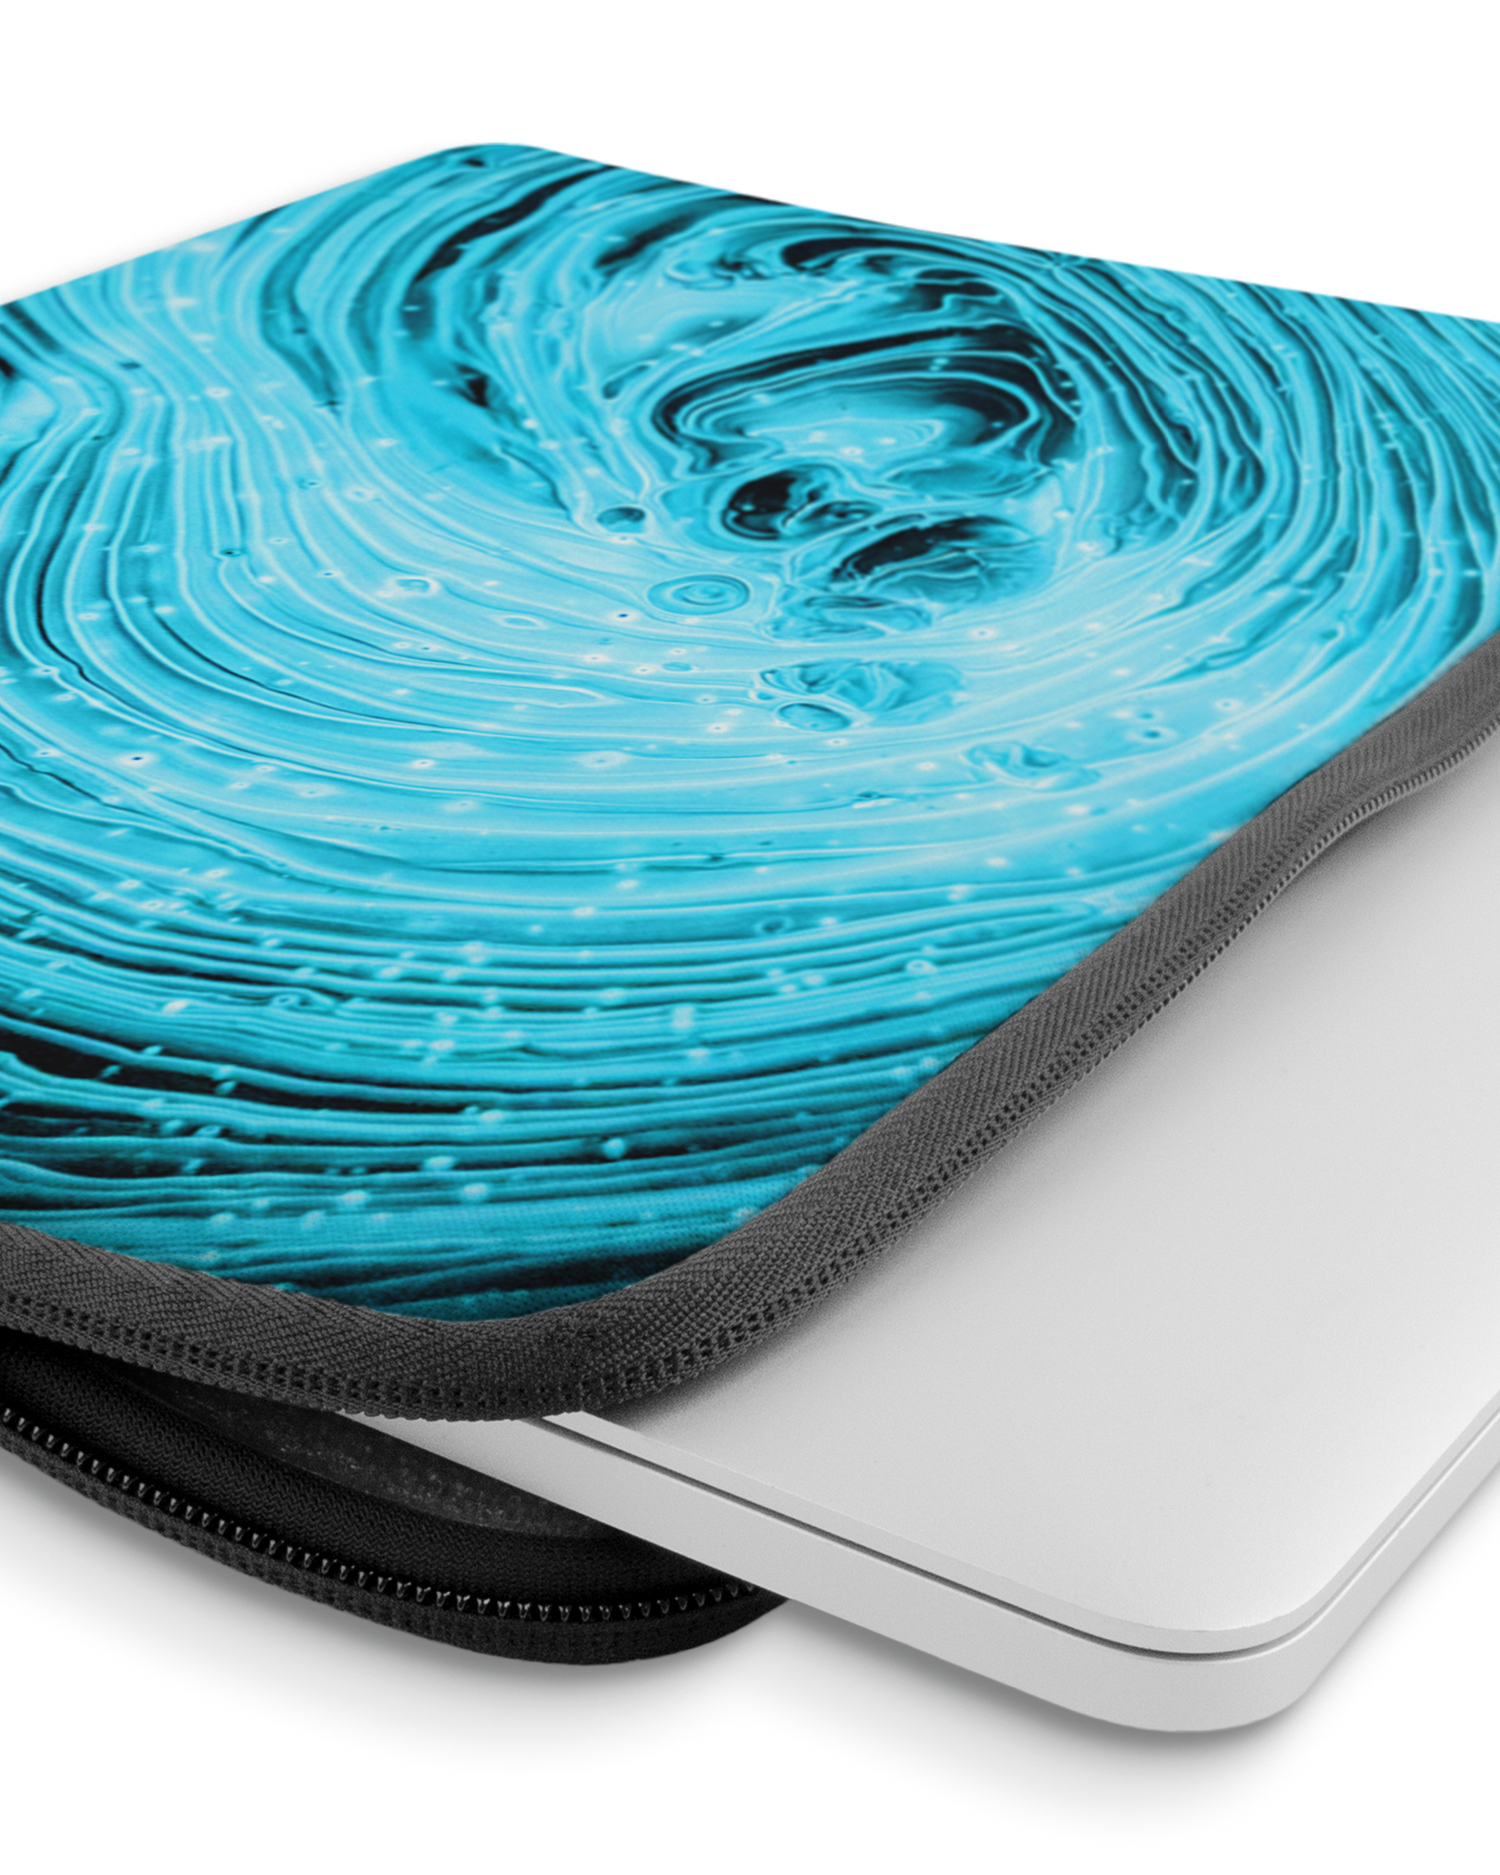 Turquoise Ripples Laptophülle 14 Zoll mit Gerät im Inneren